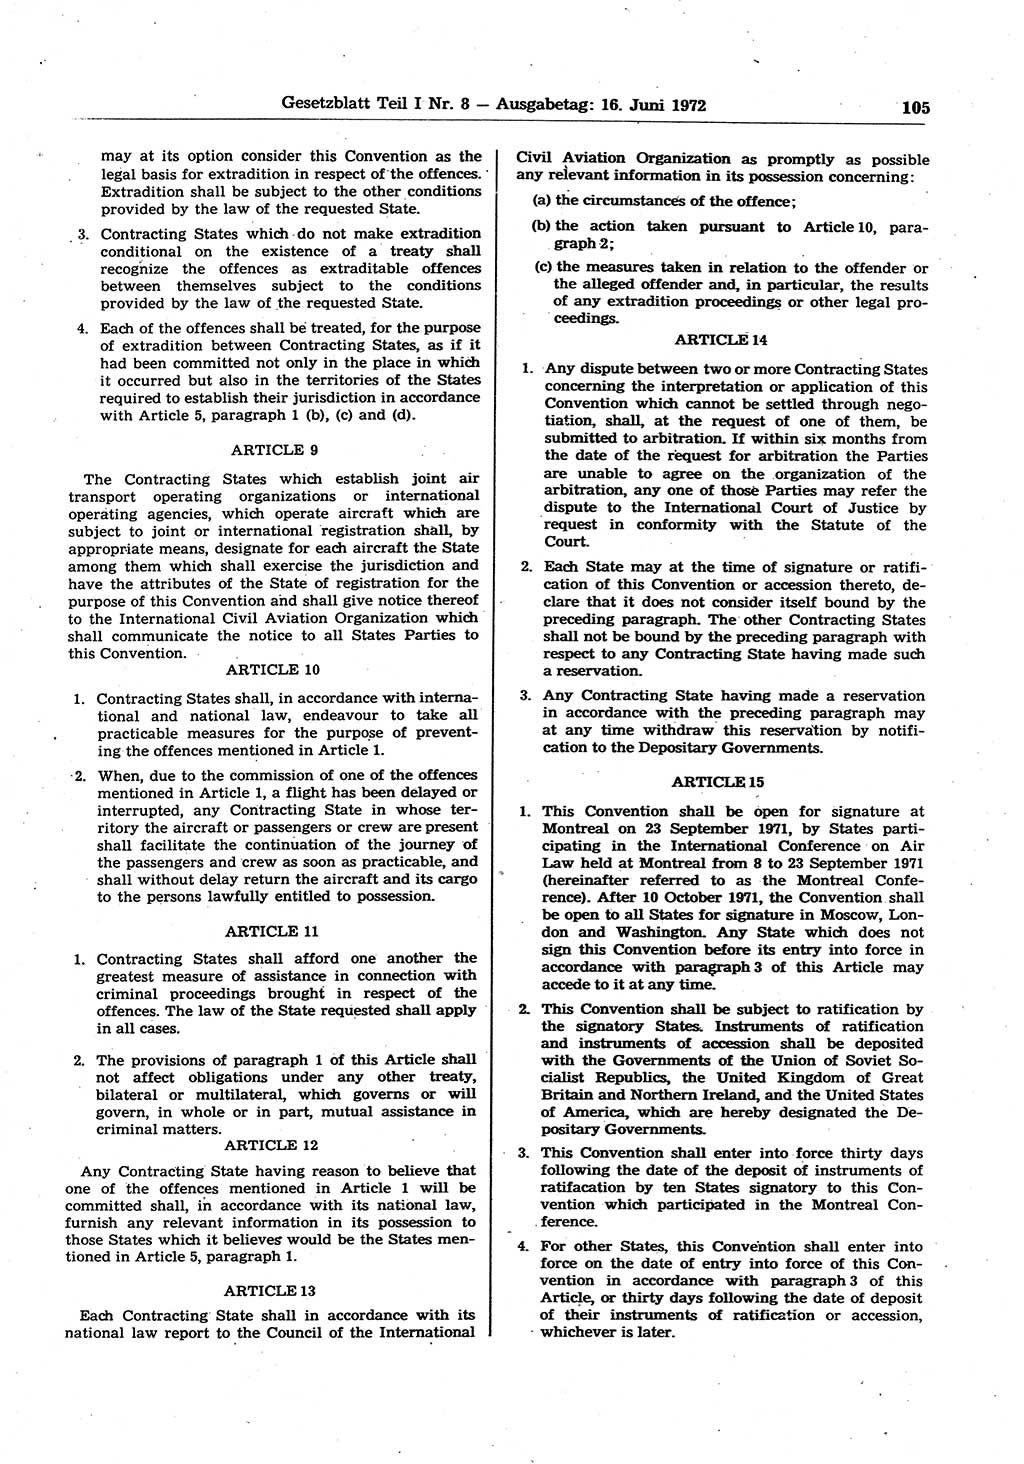 Gesetzblatt (GBl.) der Deutschen Demokratischen Republik (DDR) Teil Ⅰ 1972, Seite 105 (GBl. DDR Ⅰ 1972, S. 105)